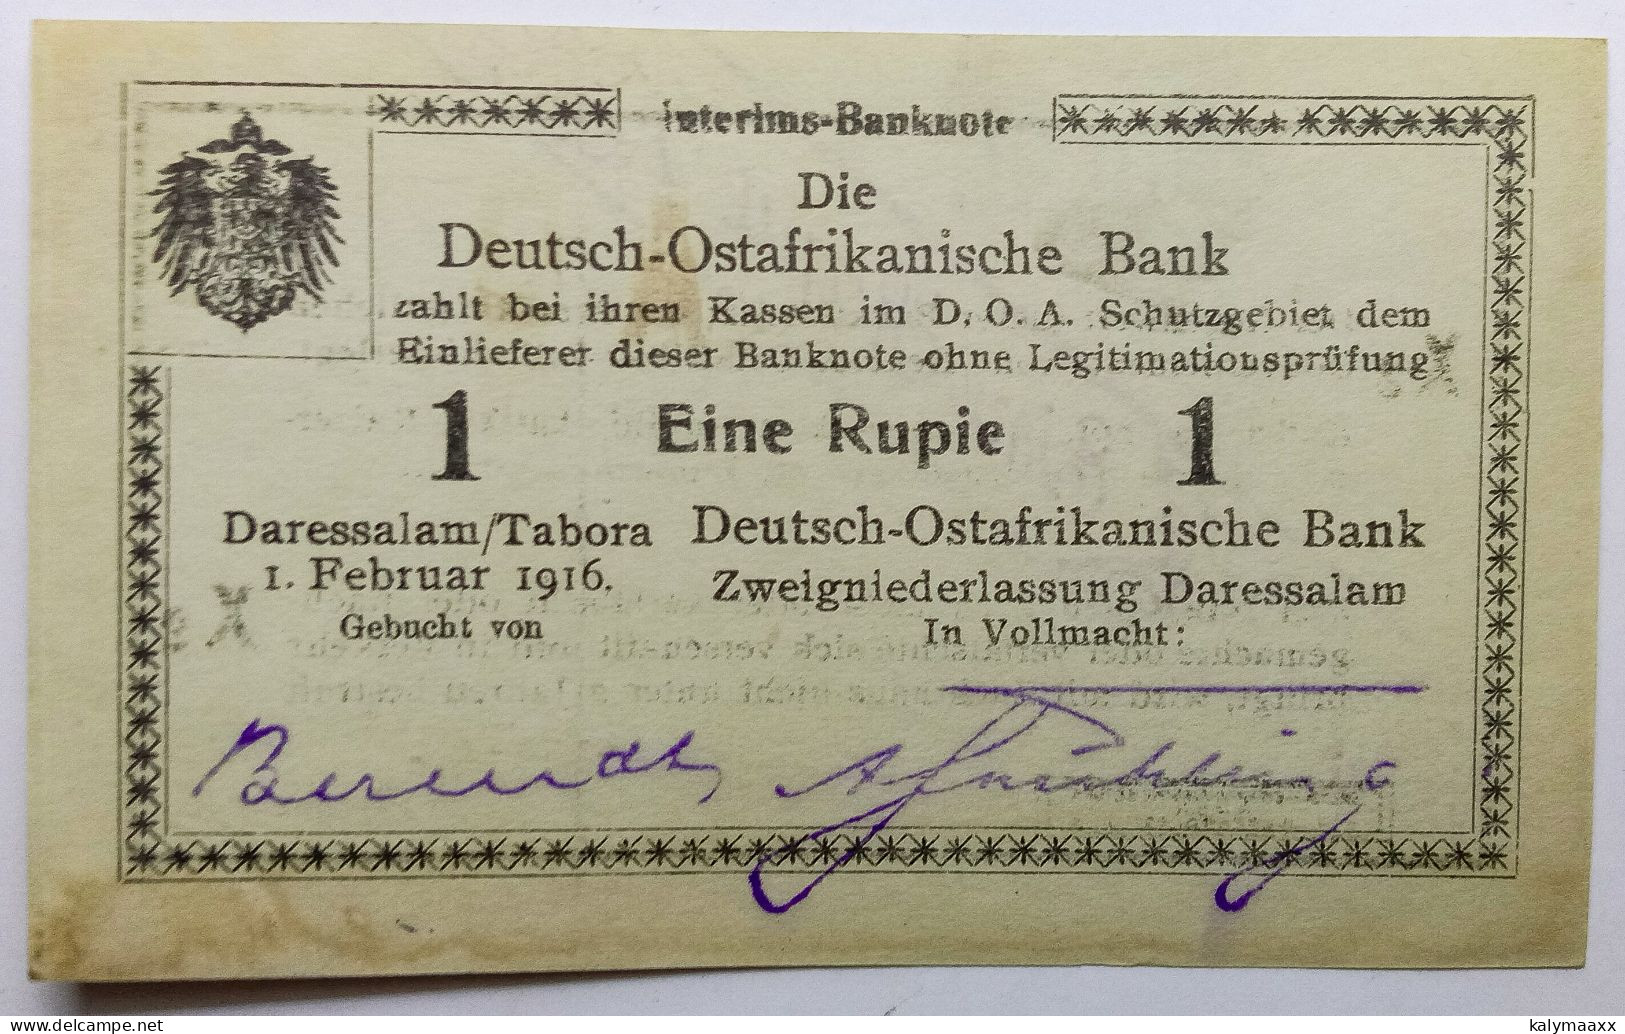 GERMAN EAST AFRICA 1916 1 RUPIE, EINE RUPIE, INTERIMS BANK NOTE, WW I....ERROR IN SERIAL NUMBER, 4 WRITTEN BY PEN - Deutsch-Ostafrikanische Bank